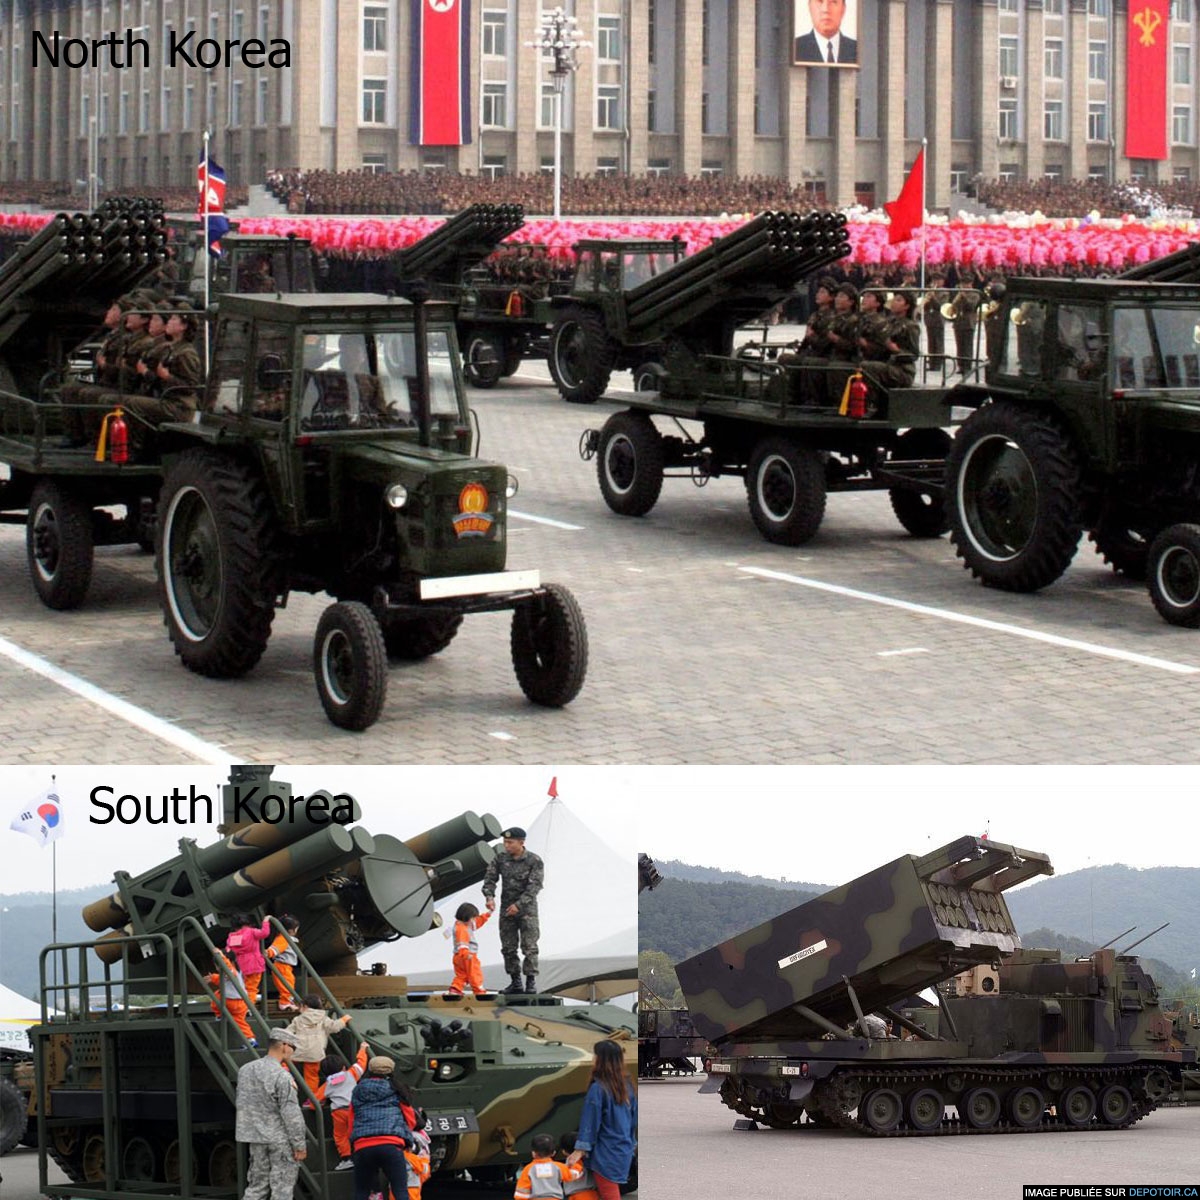 North Korea Vs. South Korea (Re-Fixed)